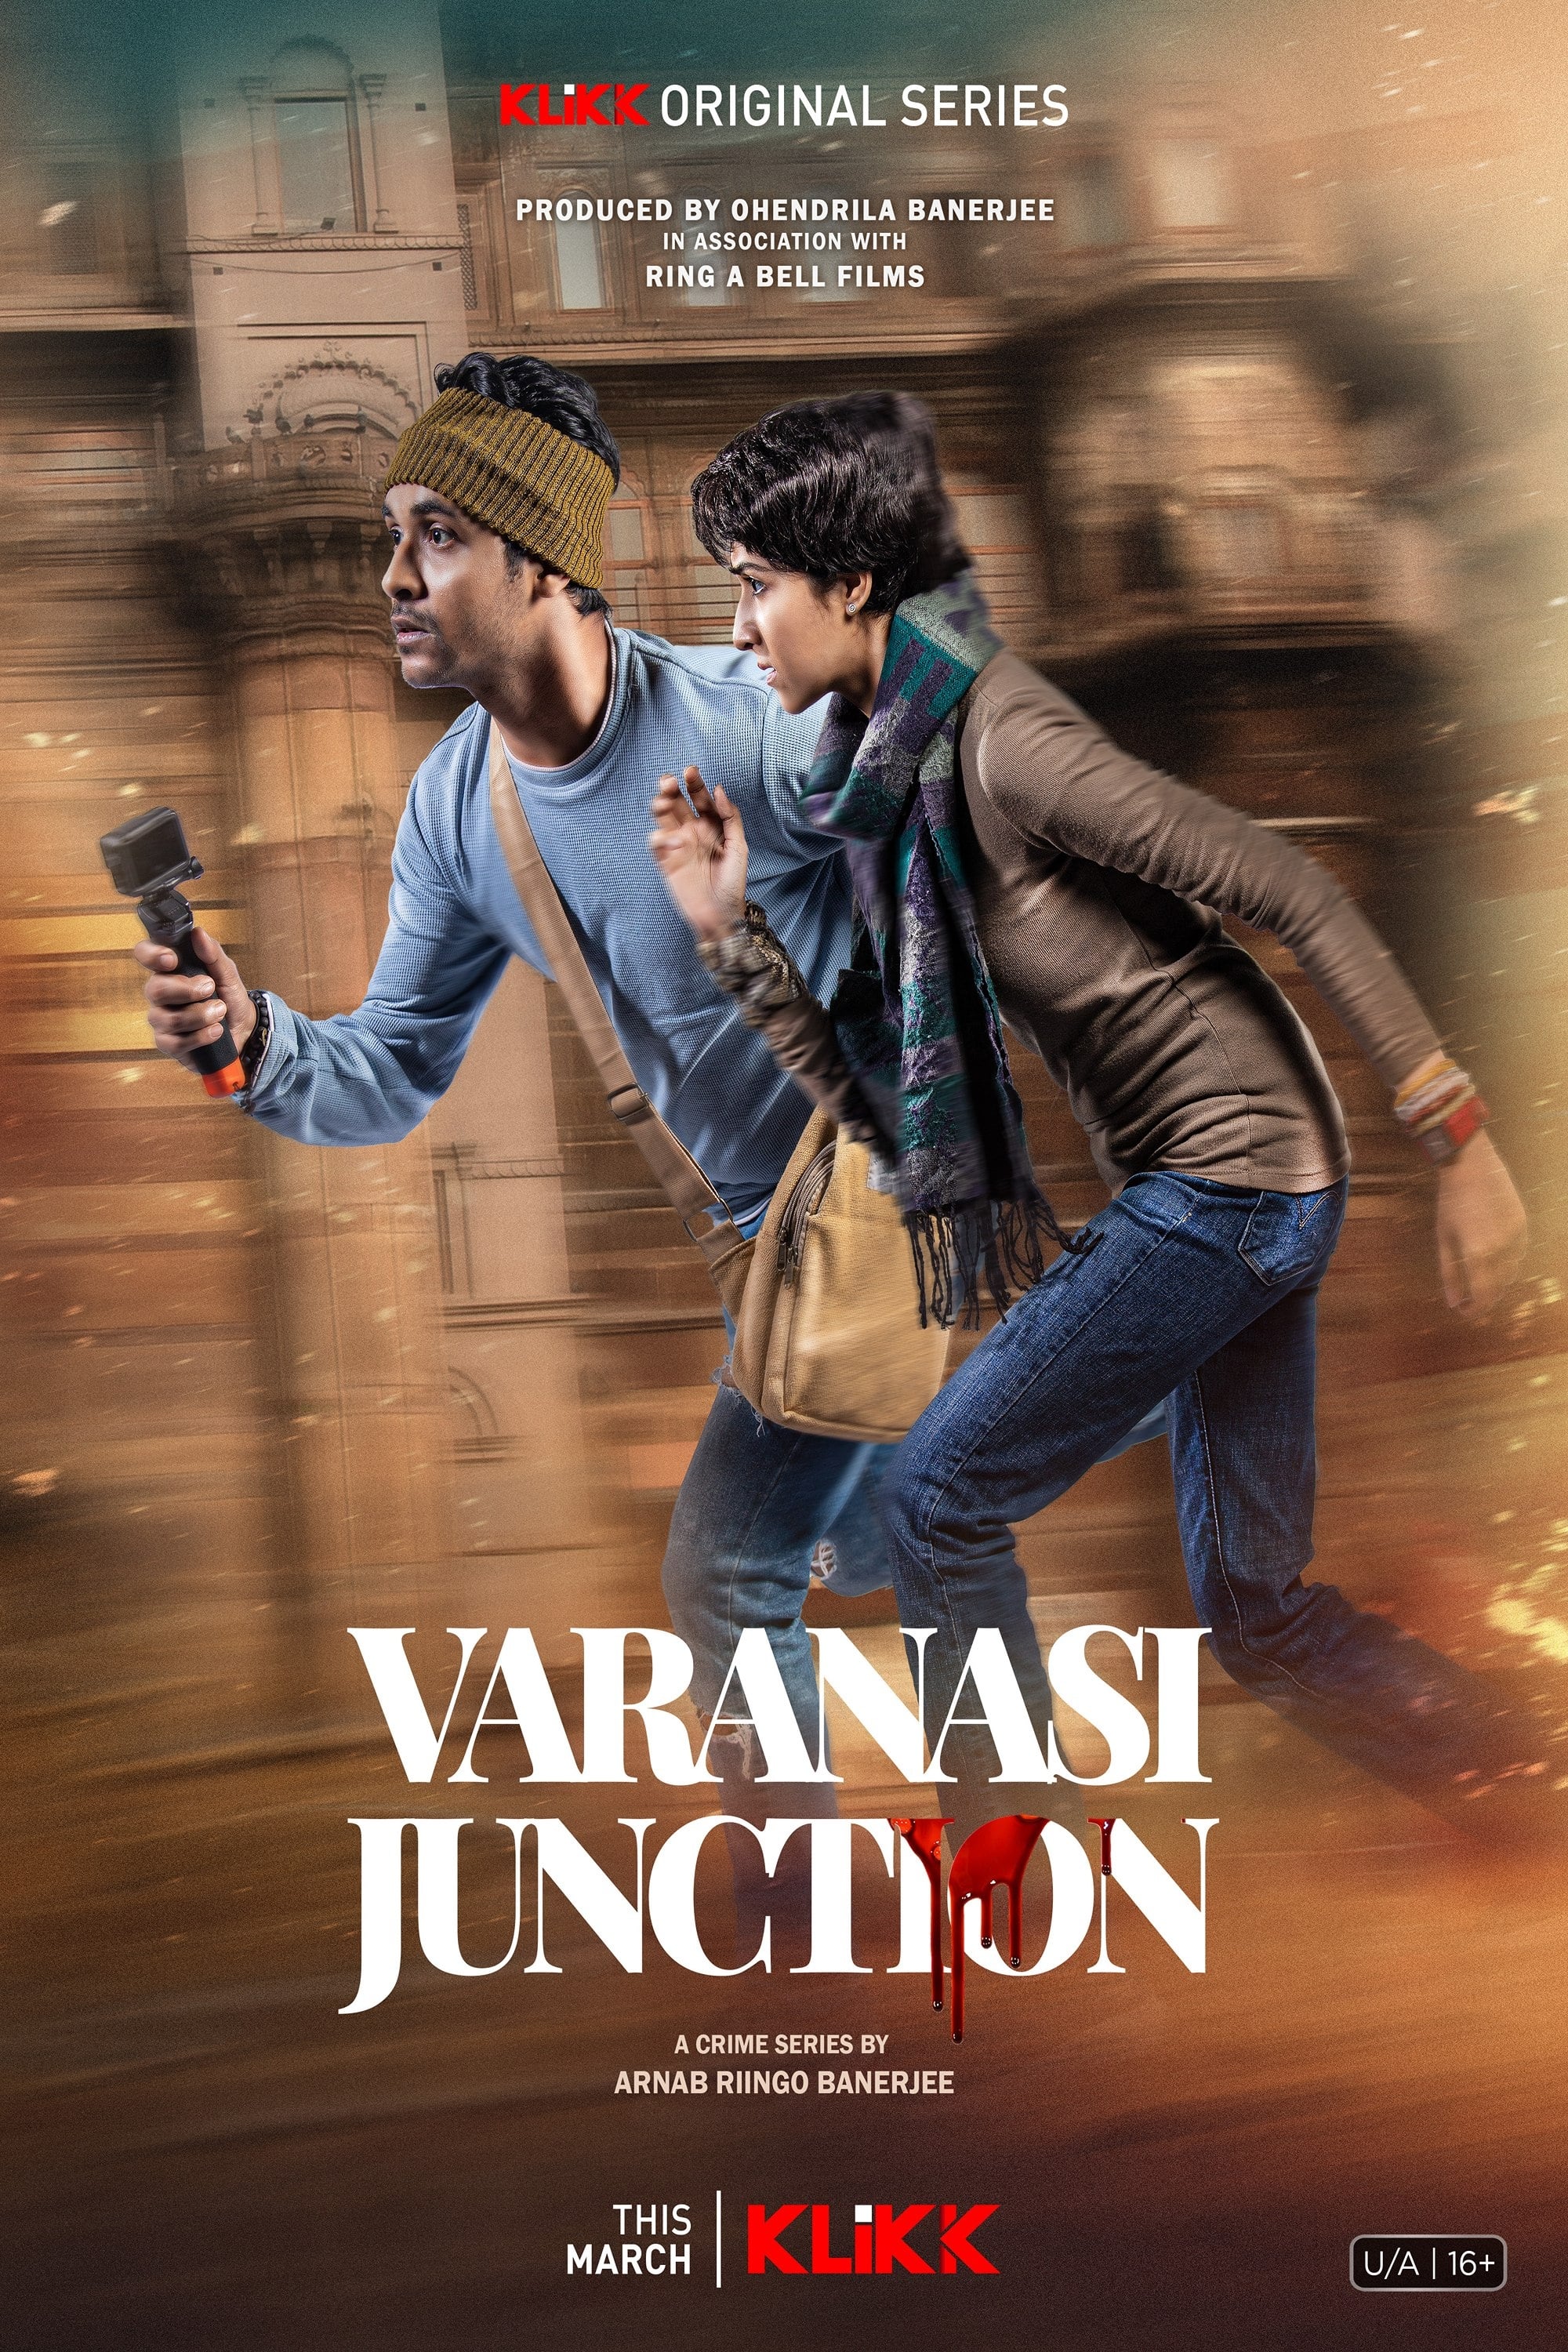 TV ratings for Varanasi Junction in Australia. KLiKK TV series